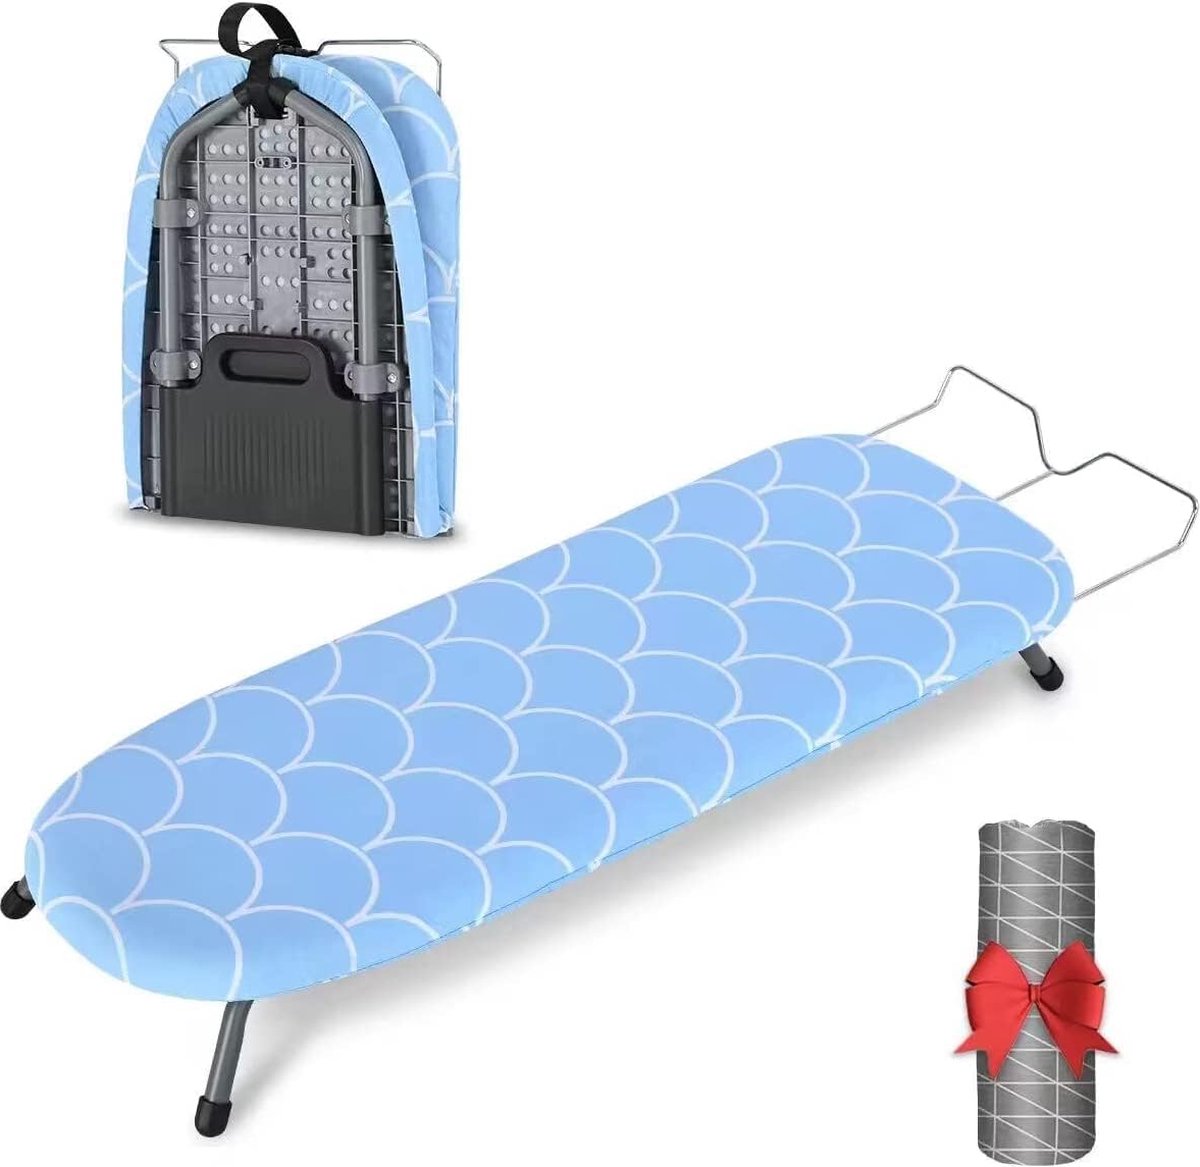 Strijkplank, kleine strijkplank, opvouwbaar met vouwfunctie, ruimtebesparend, mini opvouwbare strijkplank met antislipvoetjes voor thuisgebruik, 81,5 x 32 cm